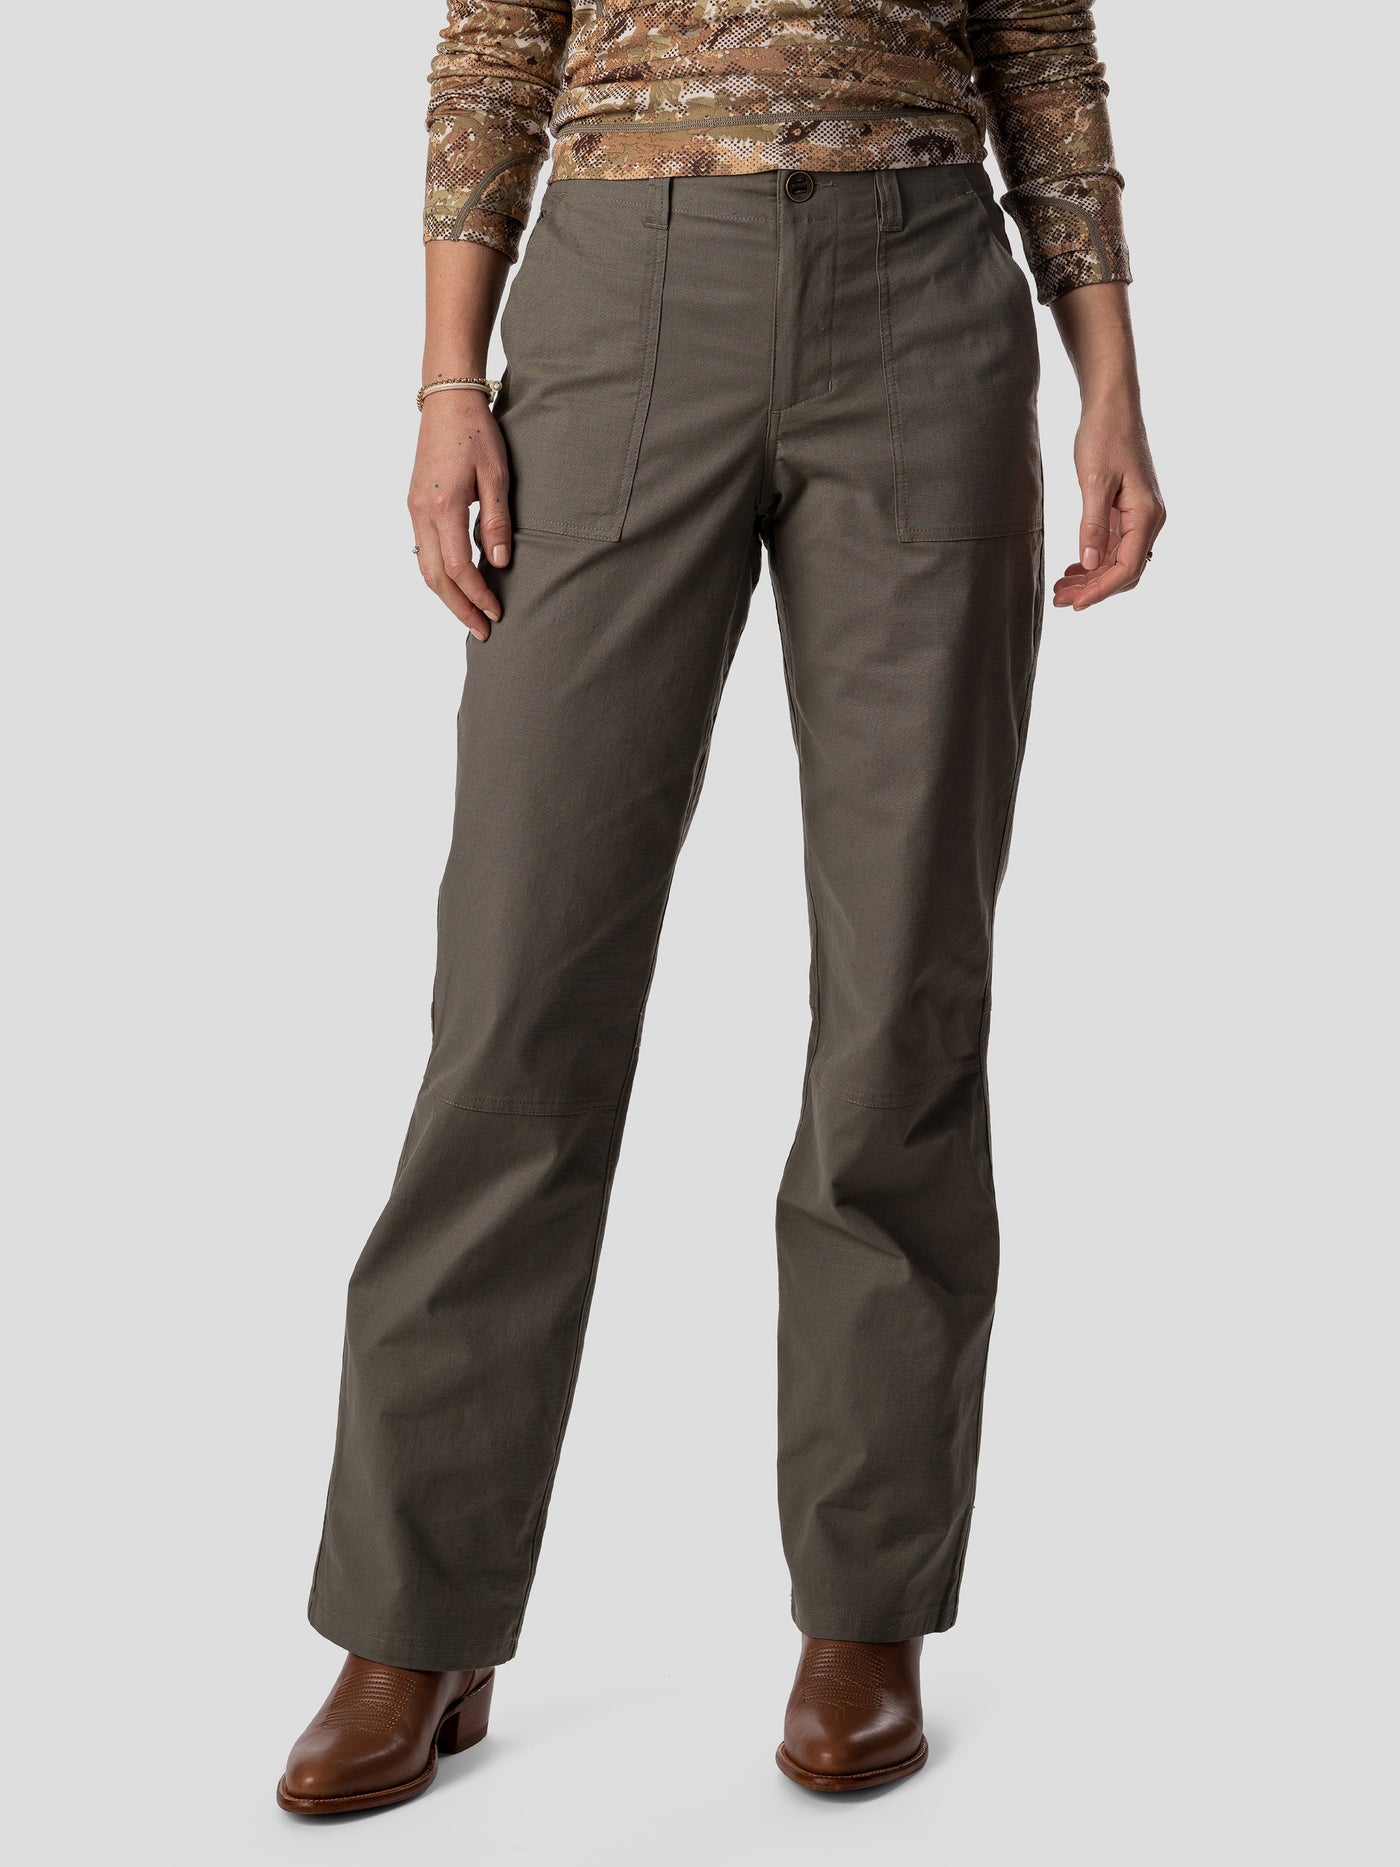 Women's Adventurer® Stretch Ripstop Jogger Pants  Ripstop pants, Cargo  pants women, Pants for women